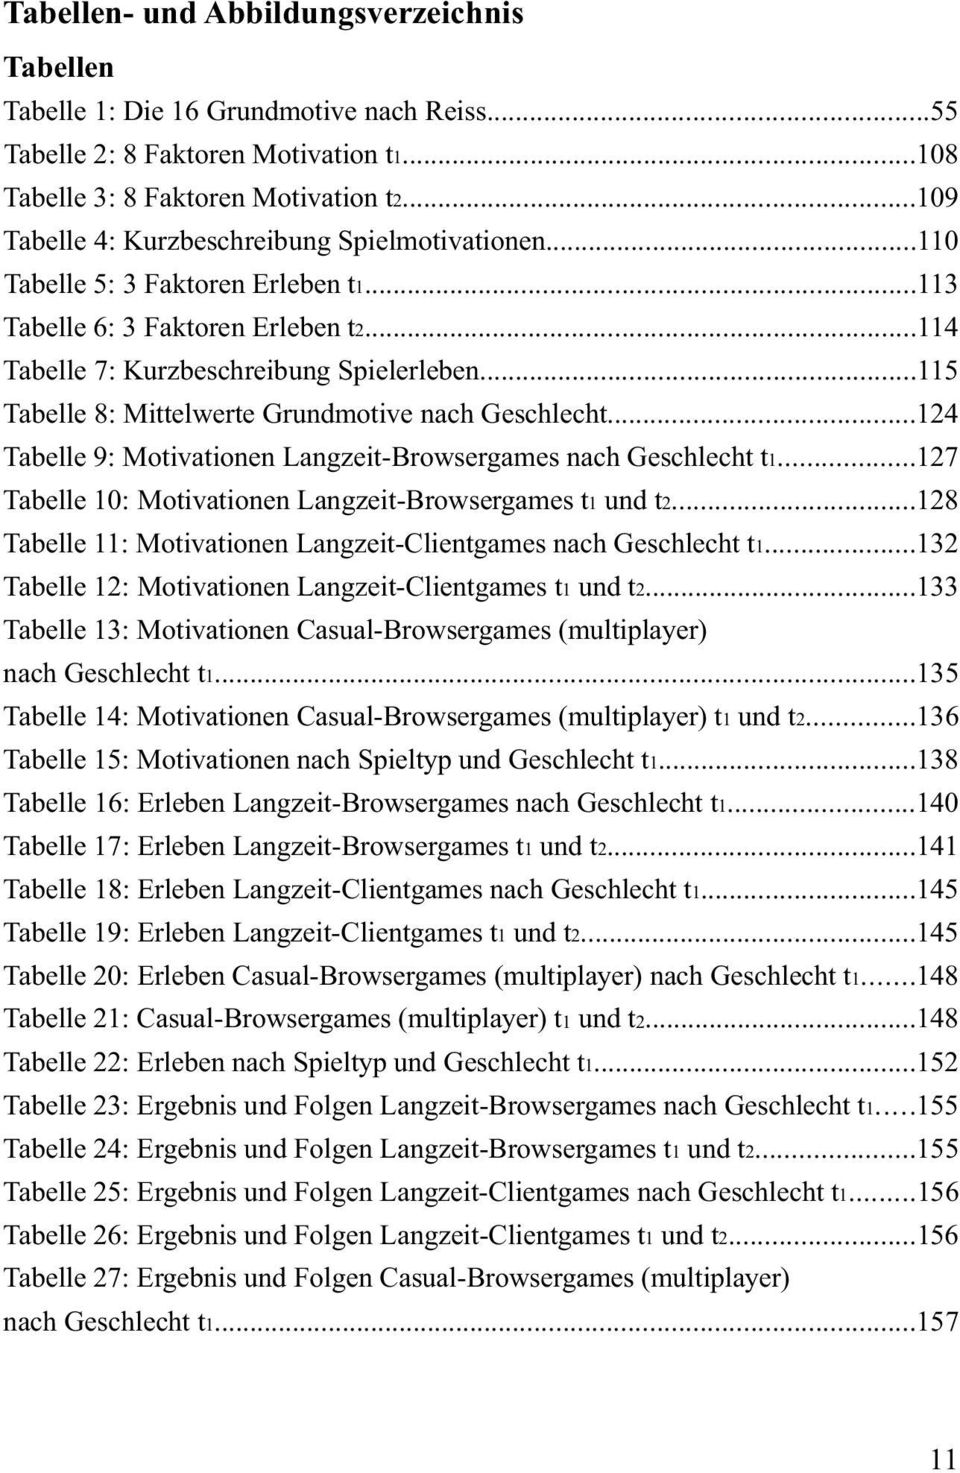 ..115 Tabelle 8: Mittelwerte Grundmotive nach Geschlecht...124 Tabelle 9: Motivationen Langzeit-Browsergames nach Geschlecht t1...127 Tabelle 10: Motivationen Langzeit-Browsergames t1 und t2.